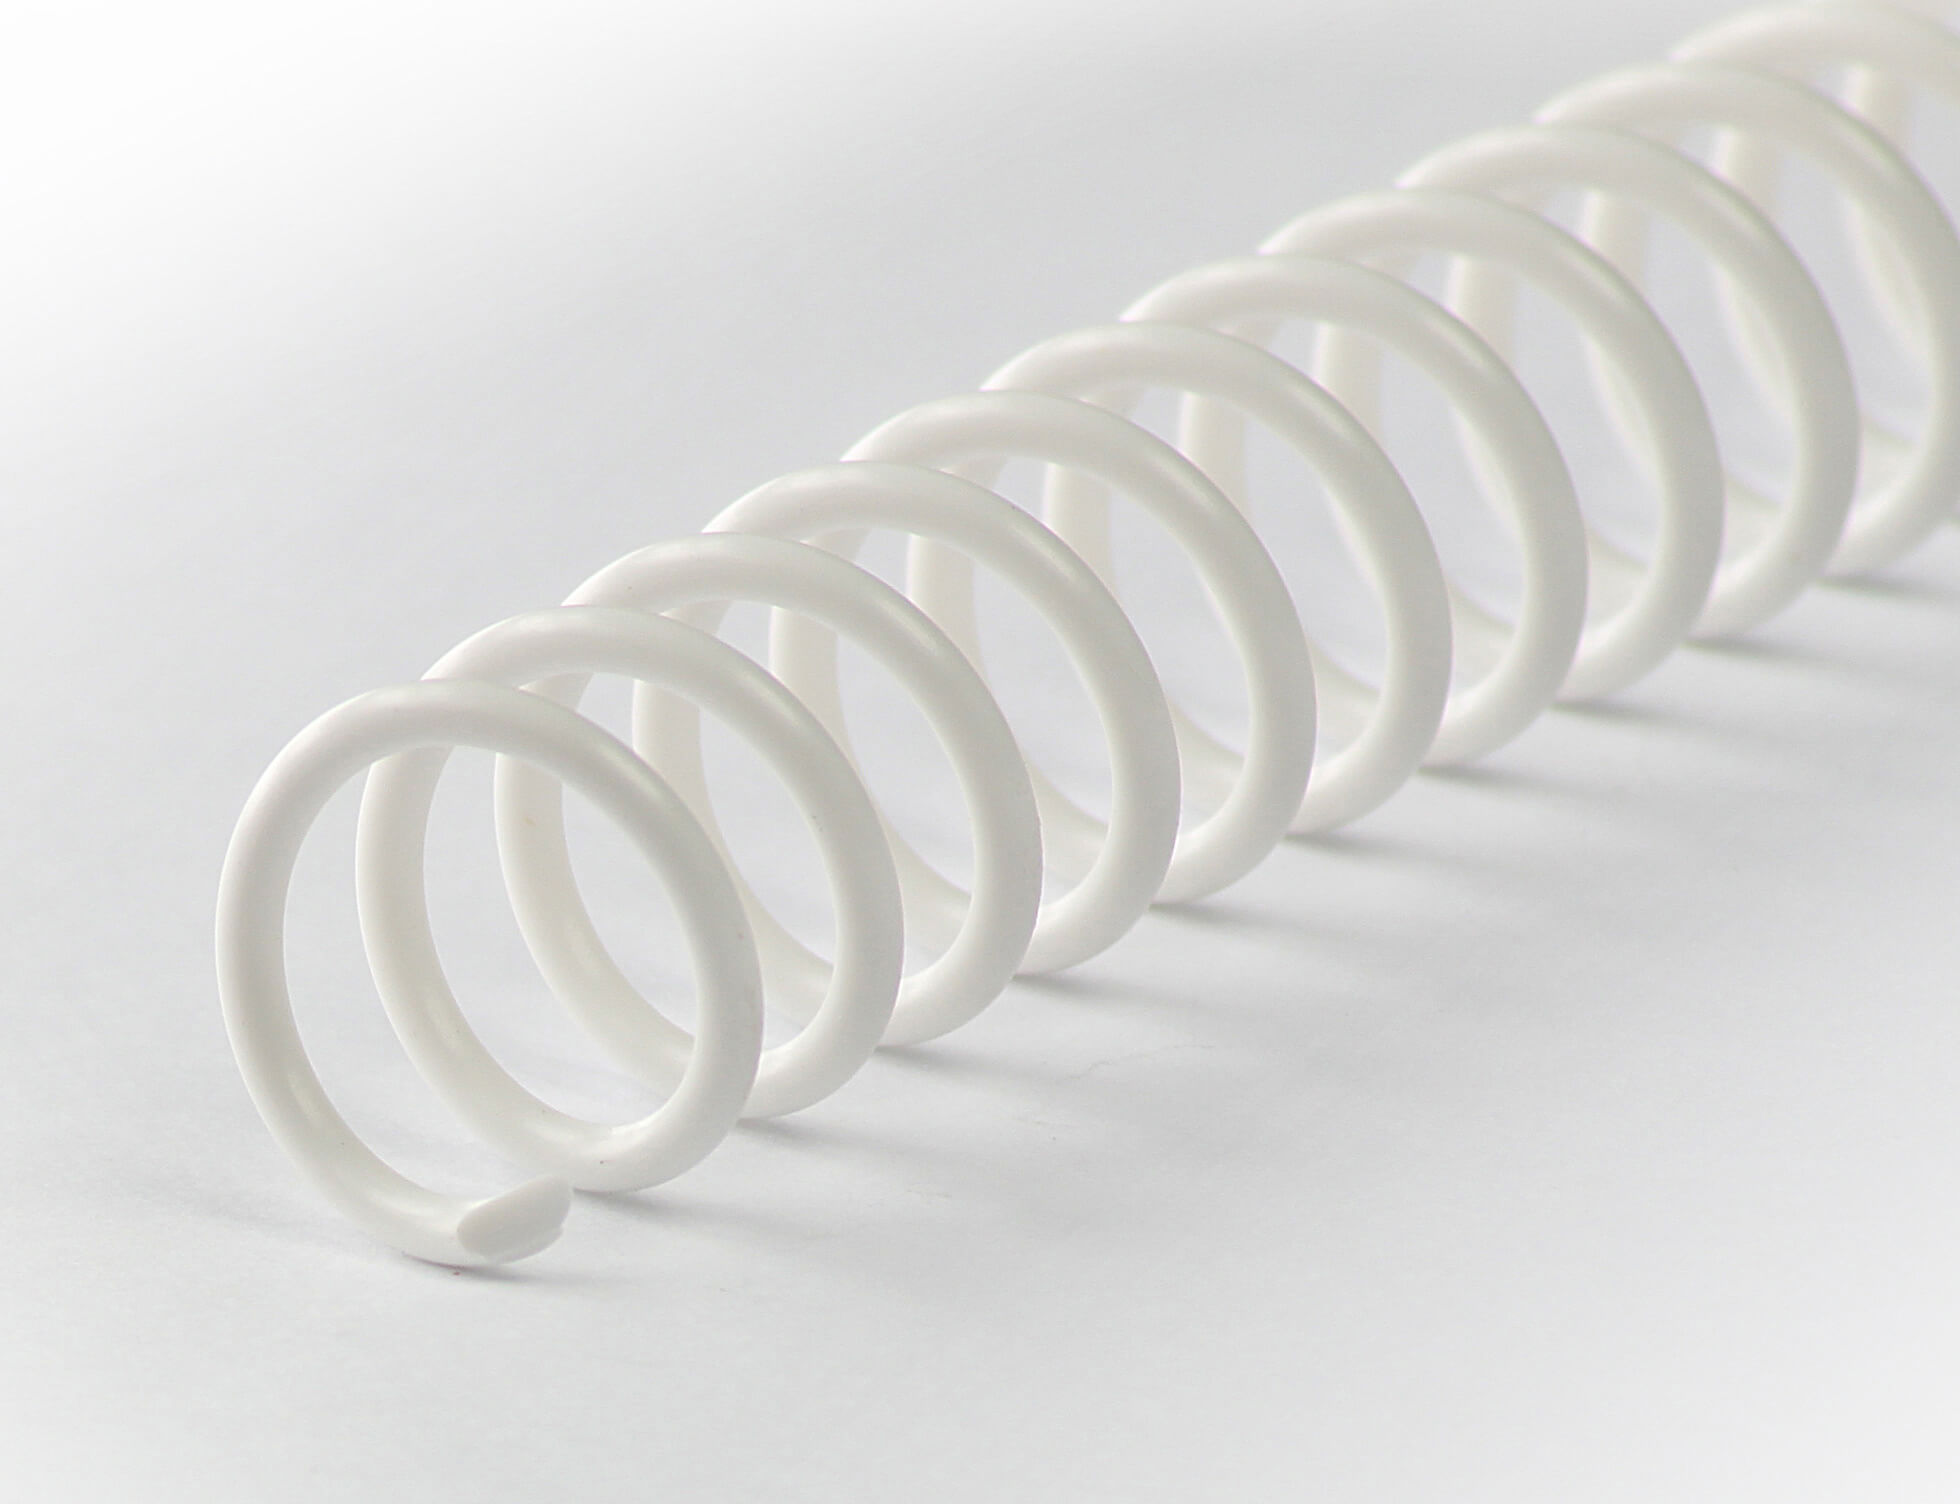 Binderücken CoilBind 47 Ringe 10mm, 4:1 Teilung weiß | Bestnr. CC10-WS